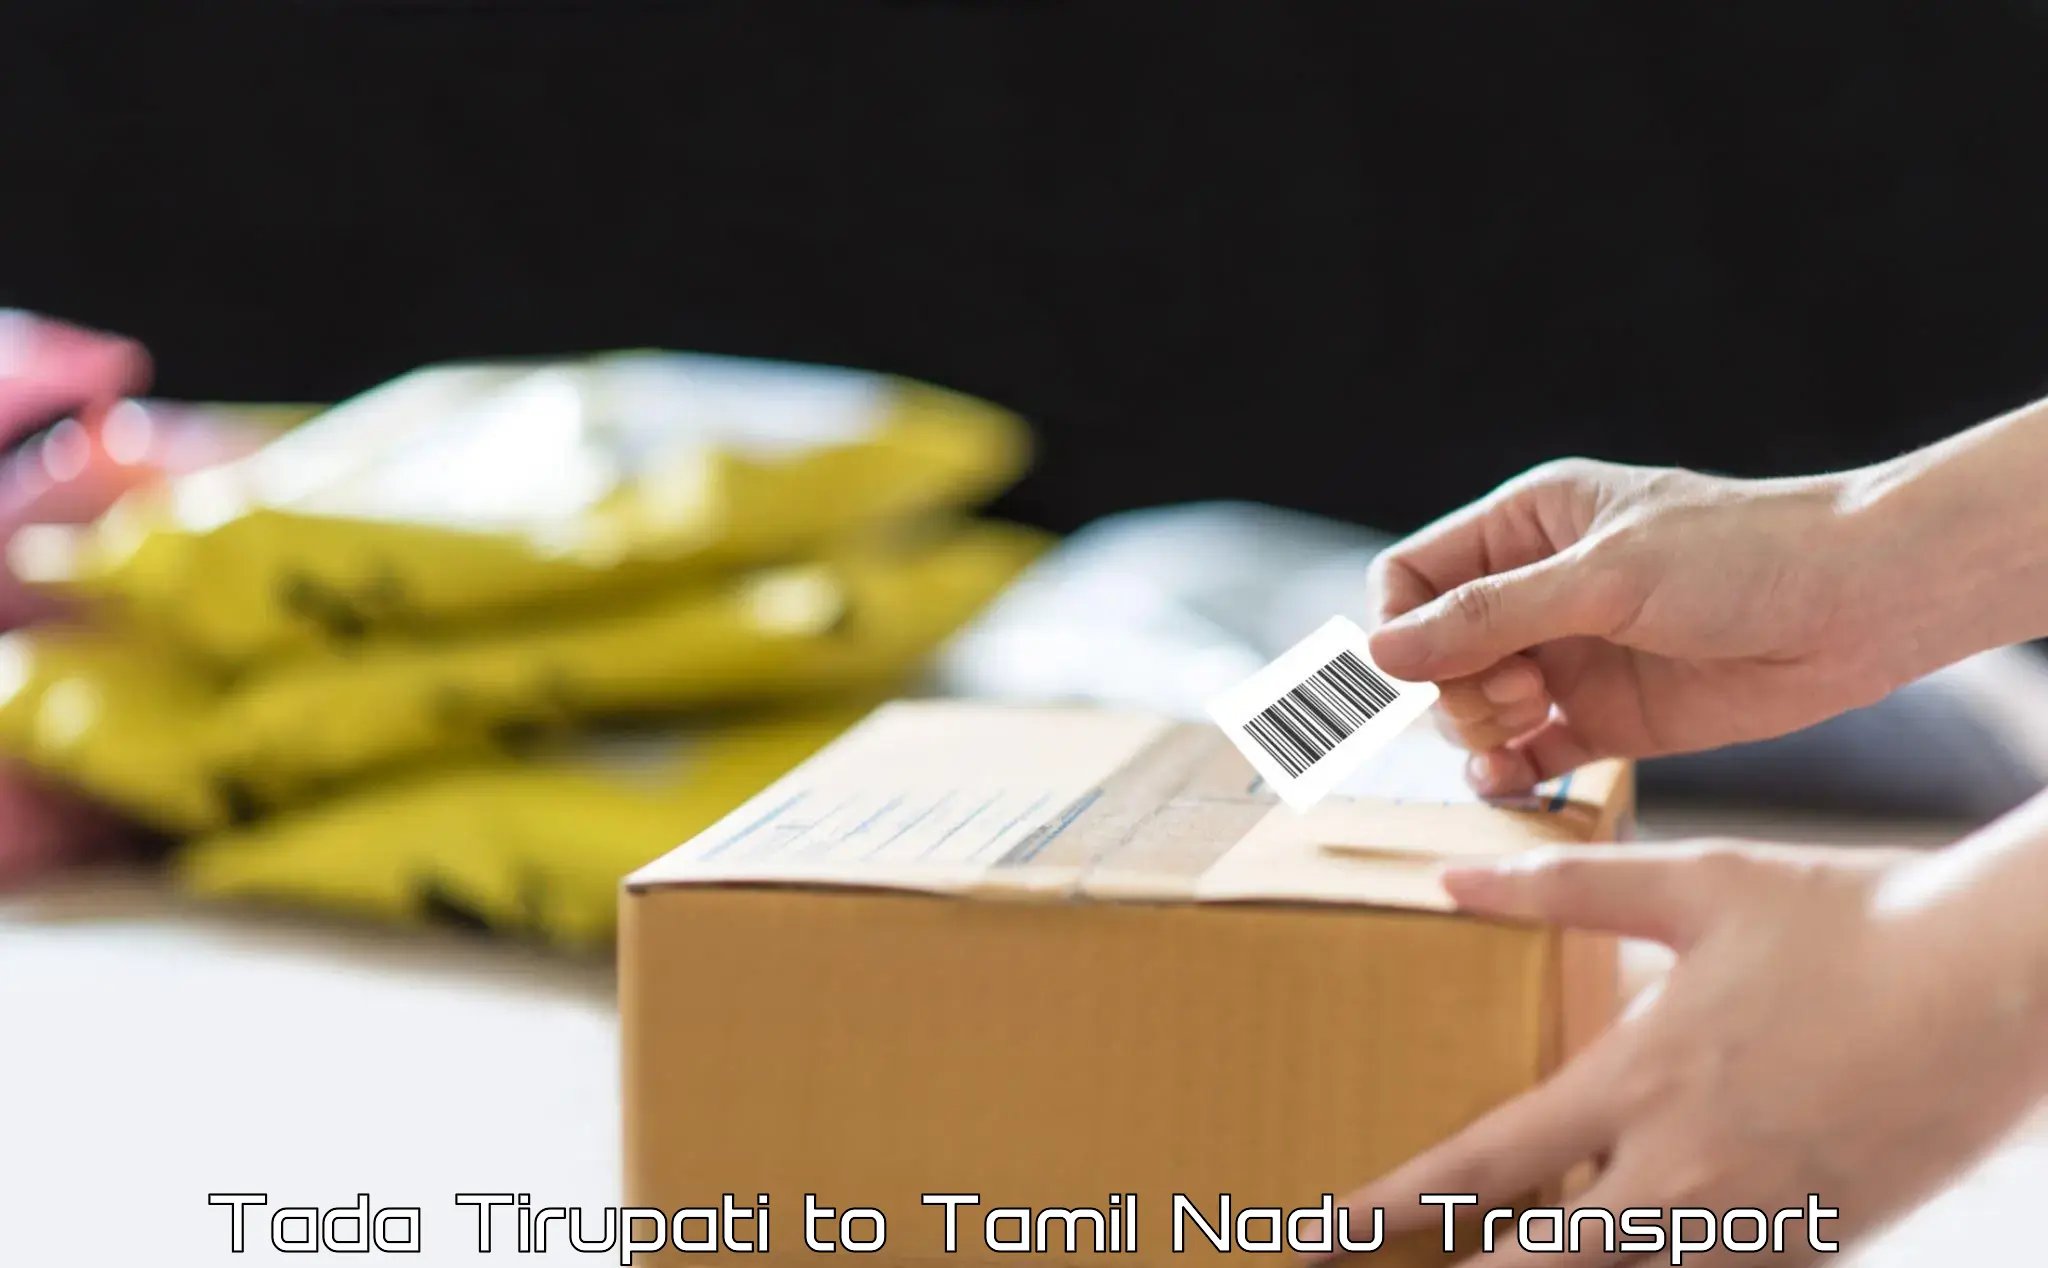 Shipping partner Tada Tirupati to Perunali